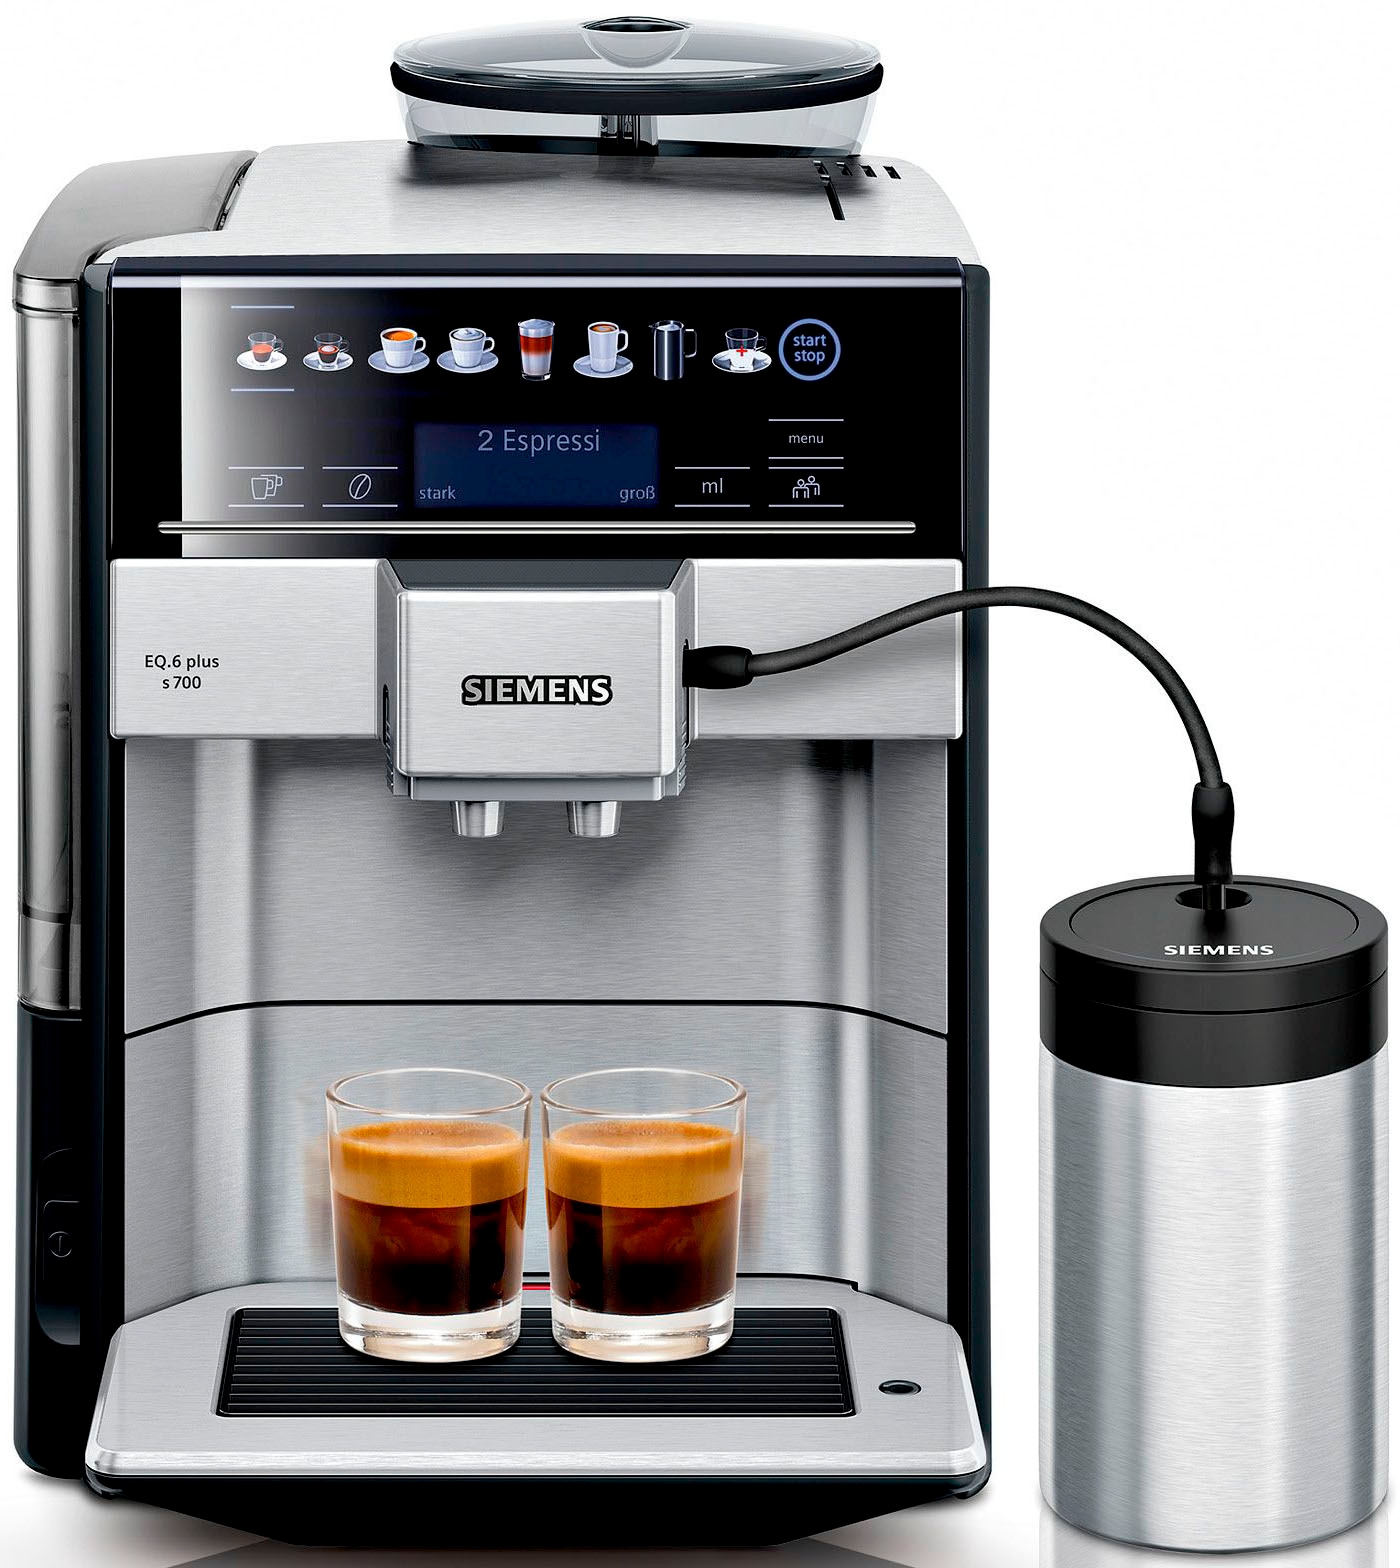 SIEMENS Kaffeevollautomat »EQ6 plus s700 TE657M03DE, viele Kaffeespezialitäten, Doppeltassenfunk«, Edelstahl-Milchbehälter, automatische Dampfreinigung, edelstahl